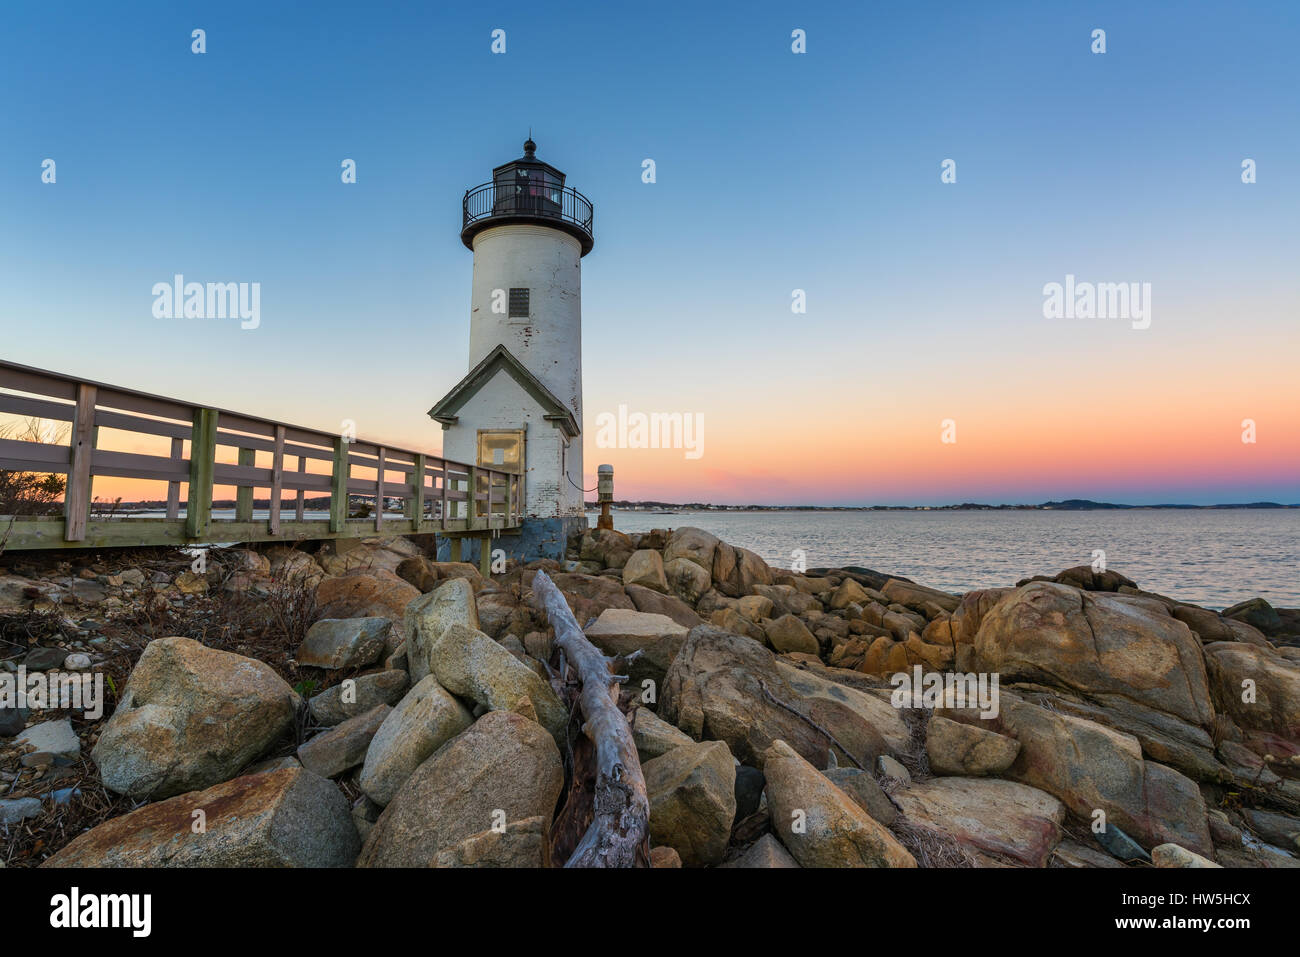 Annisquam lighthouse at sunrise Stock Photo